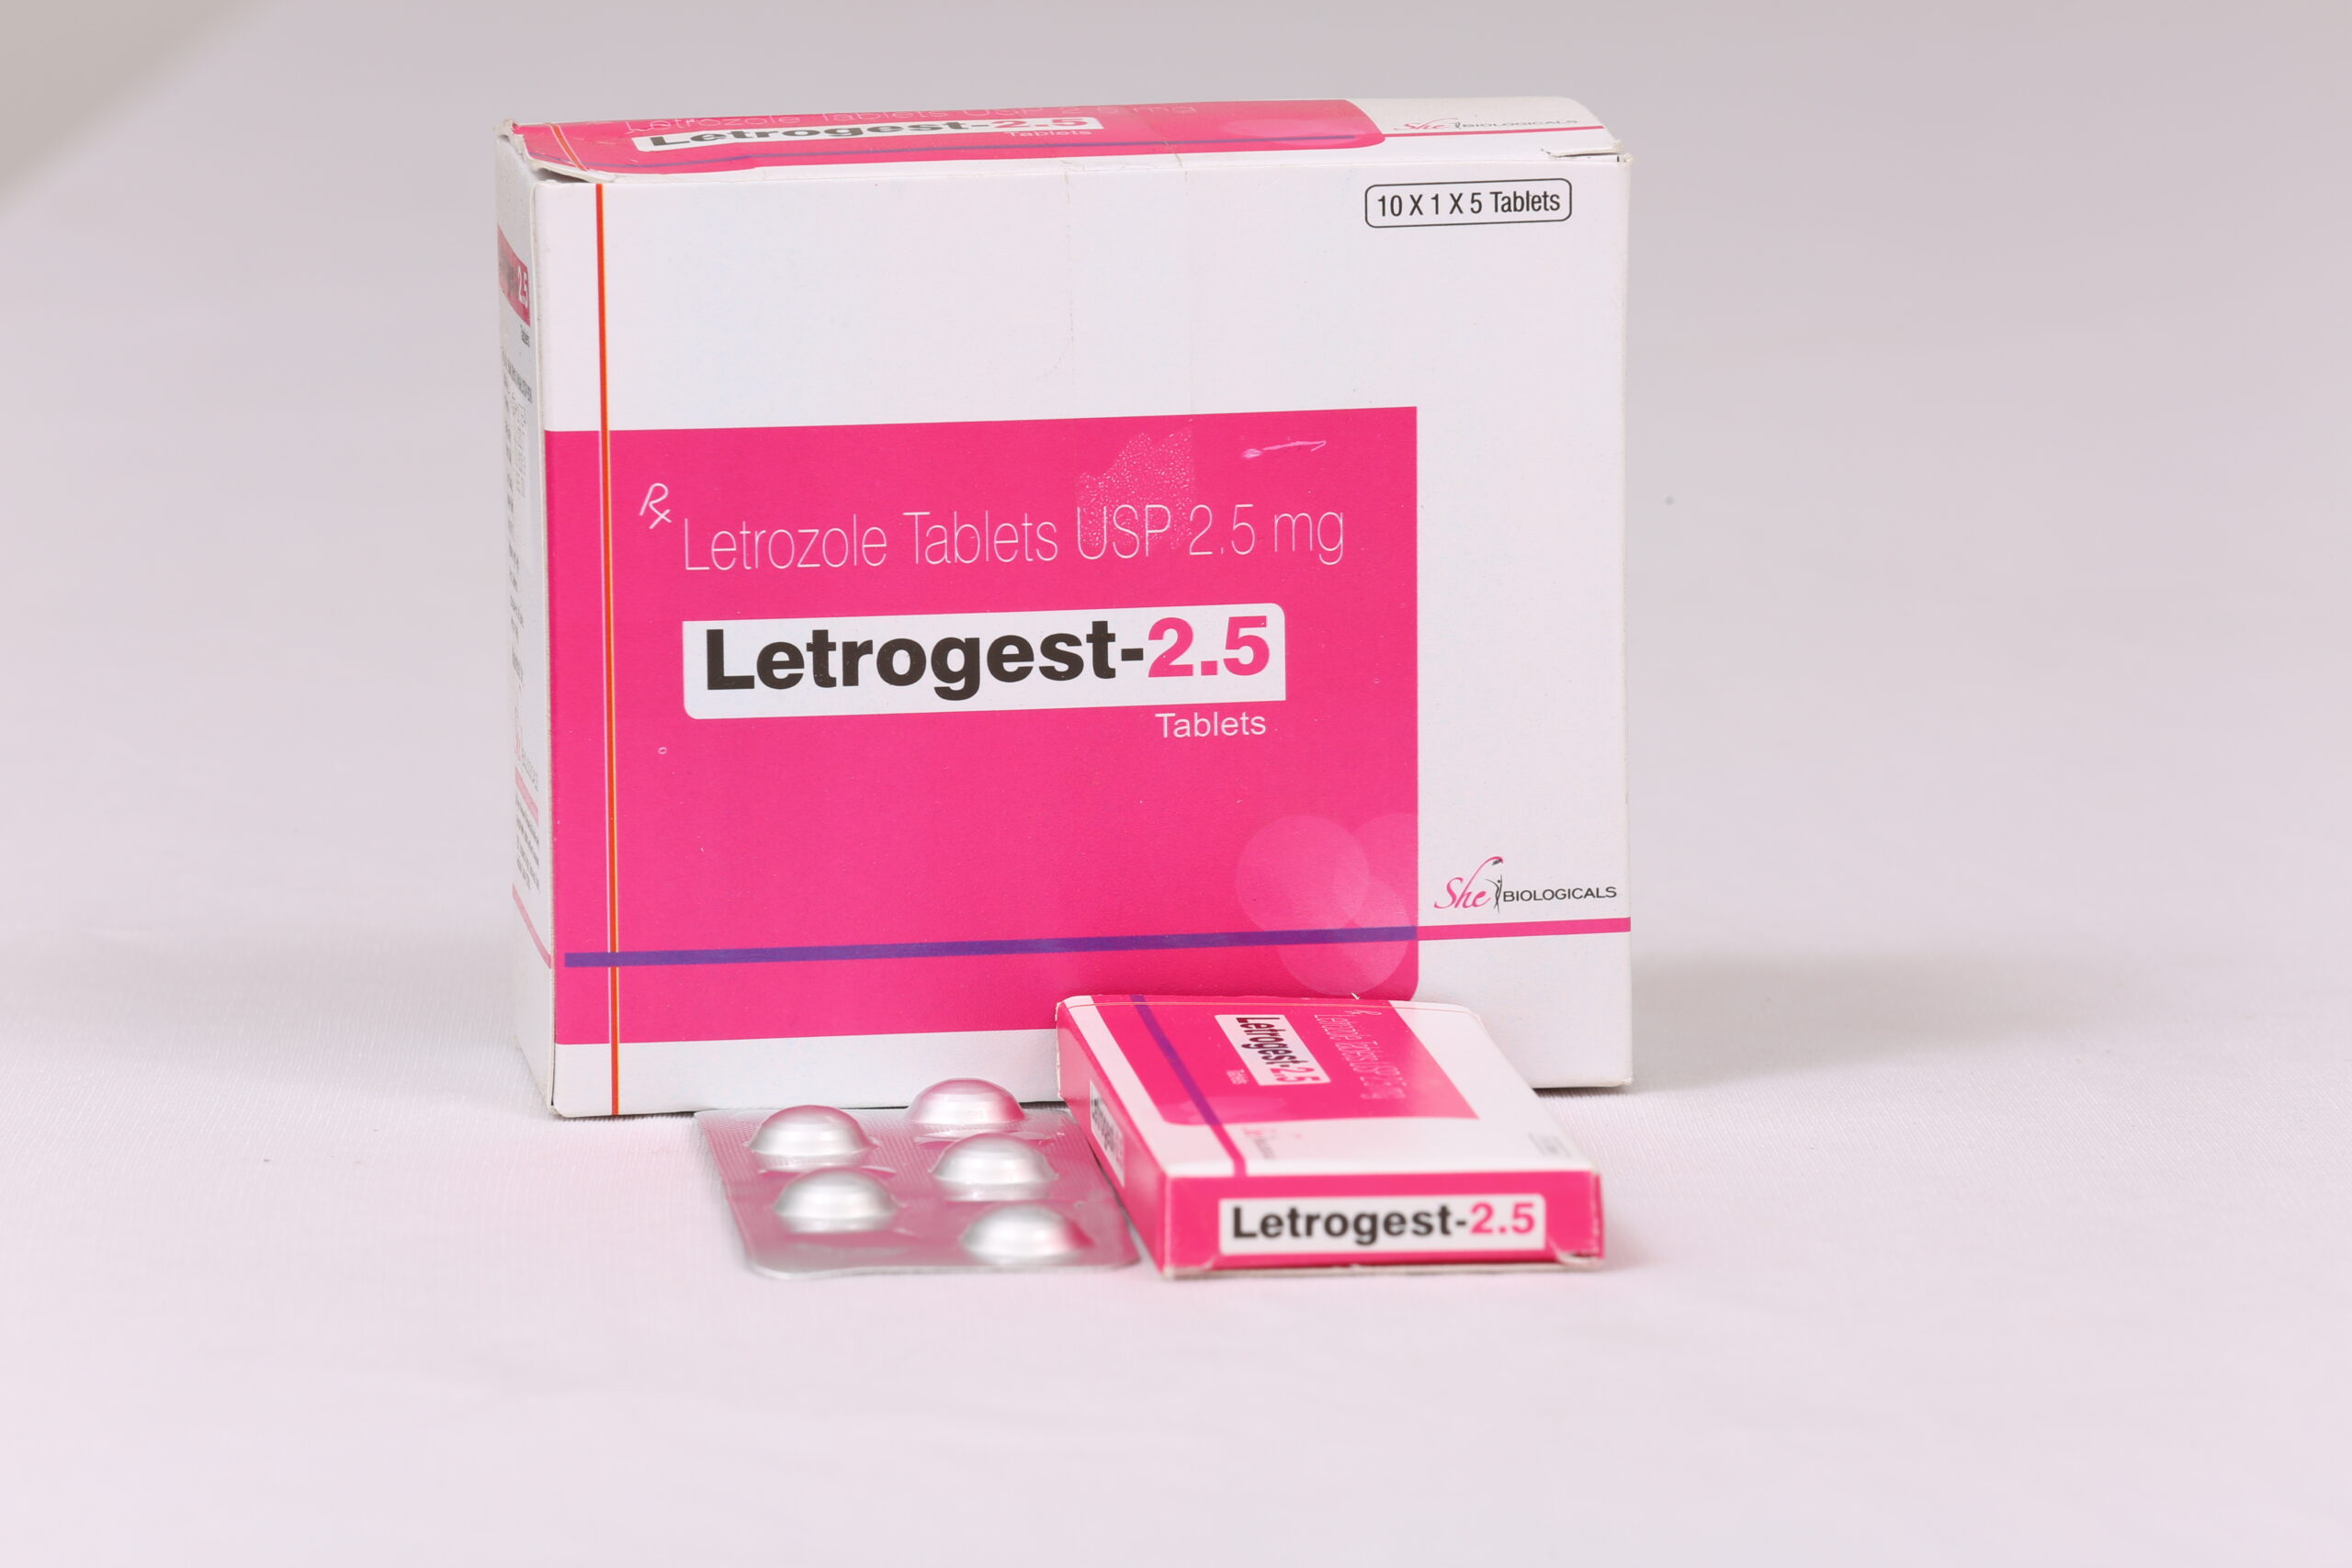 LETROGEST-2.5 (Letrozole 2.5 mg)